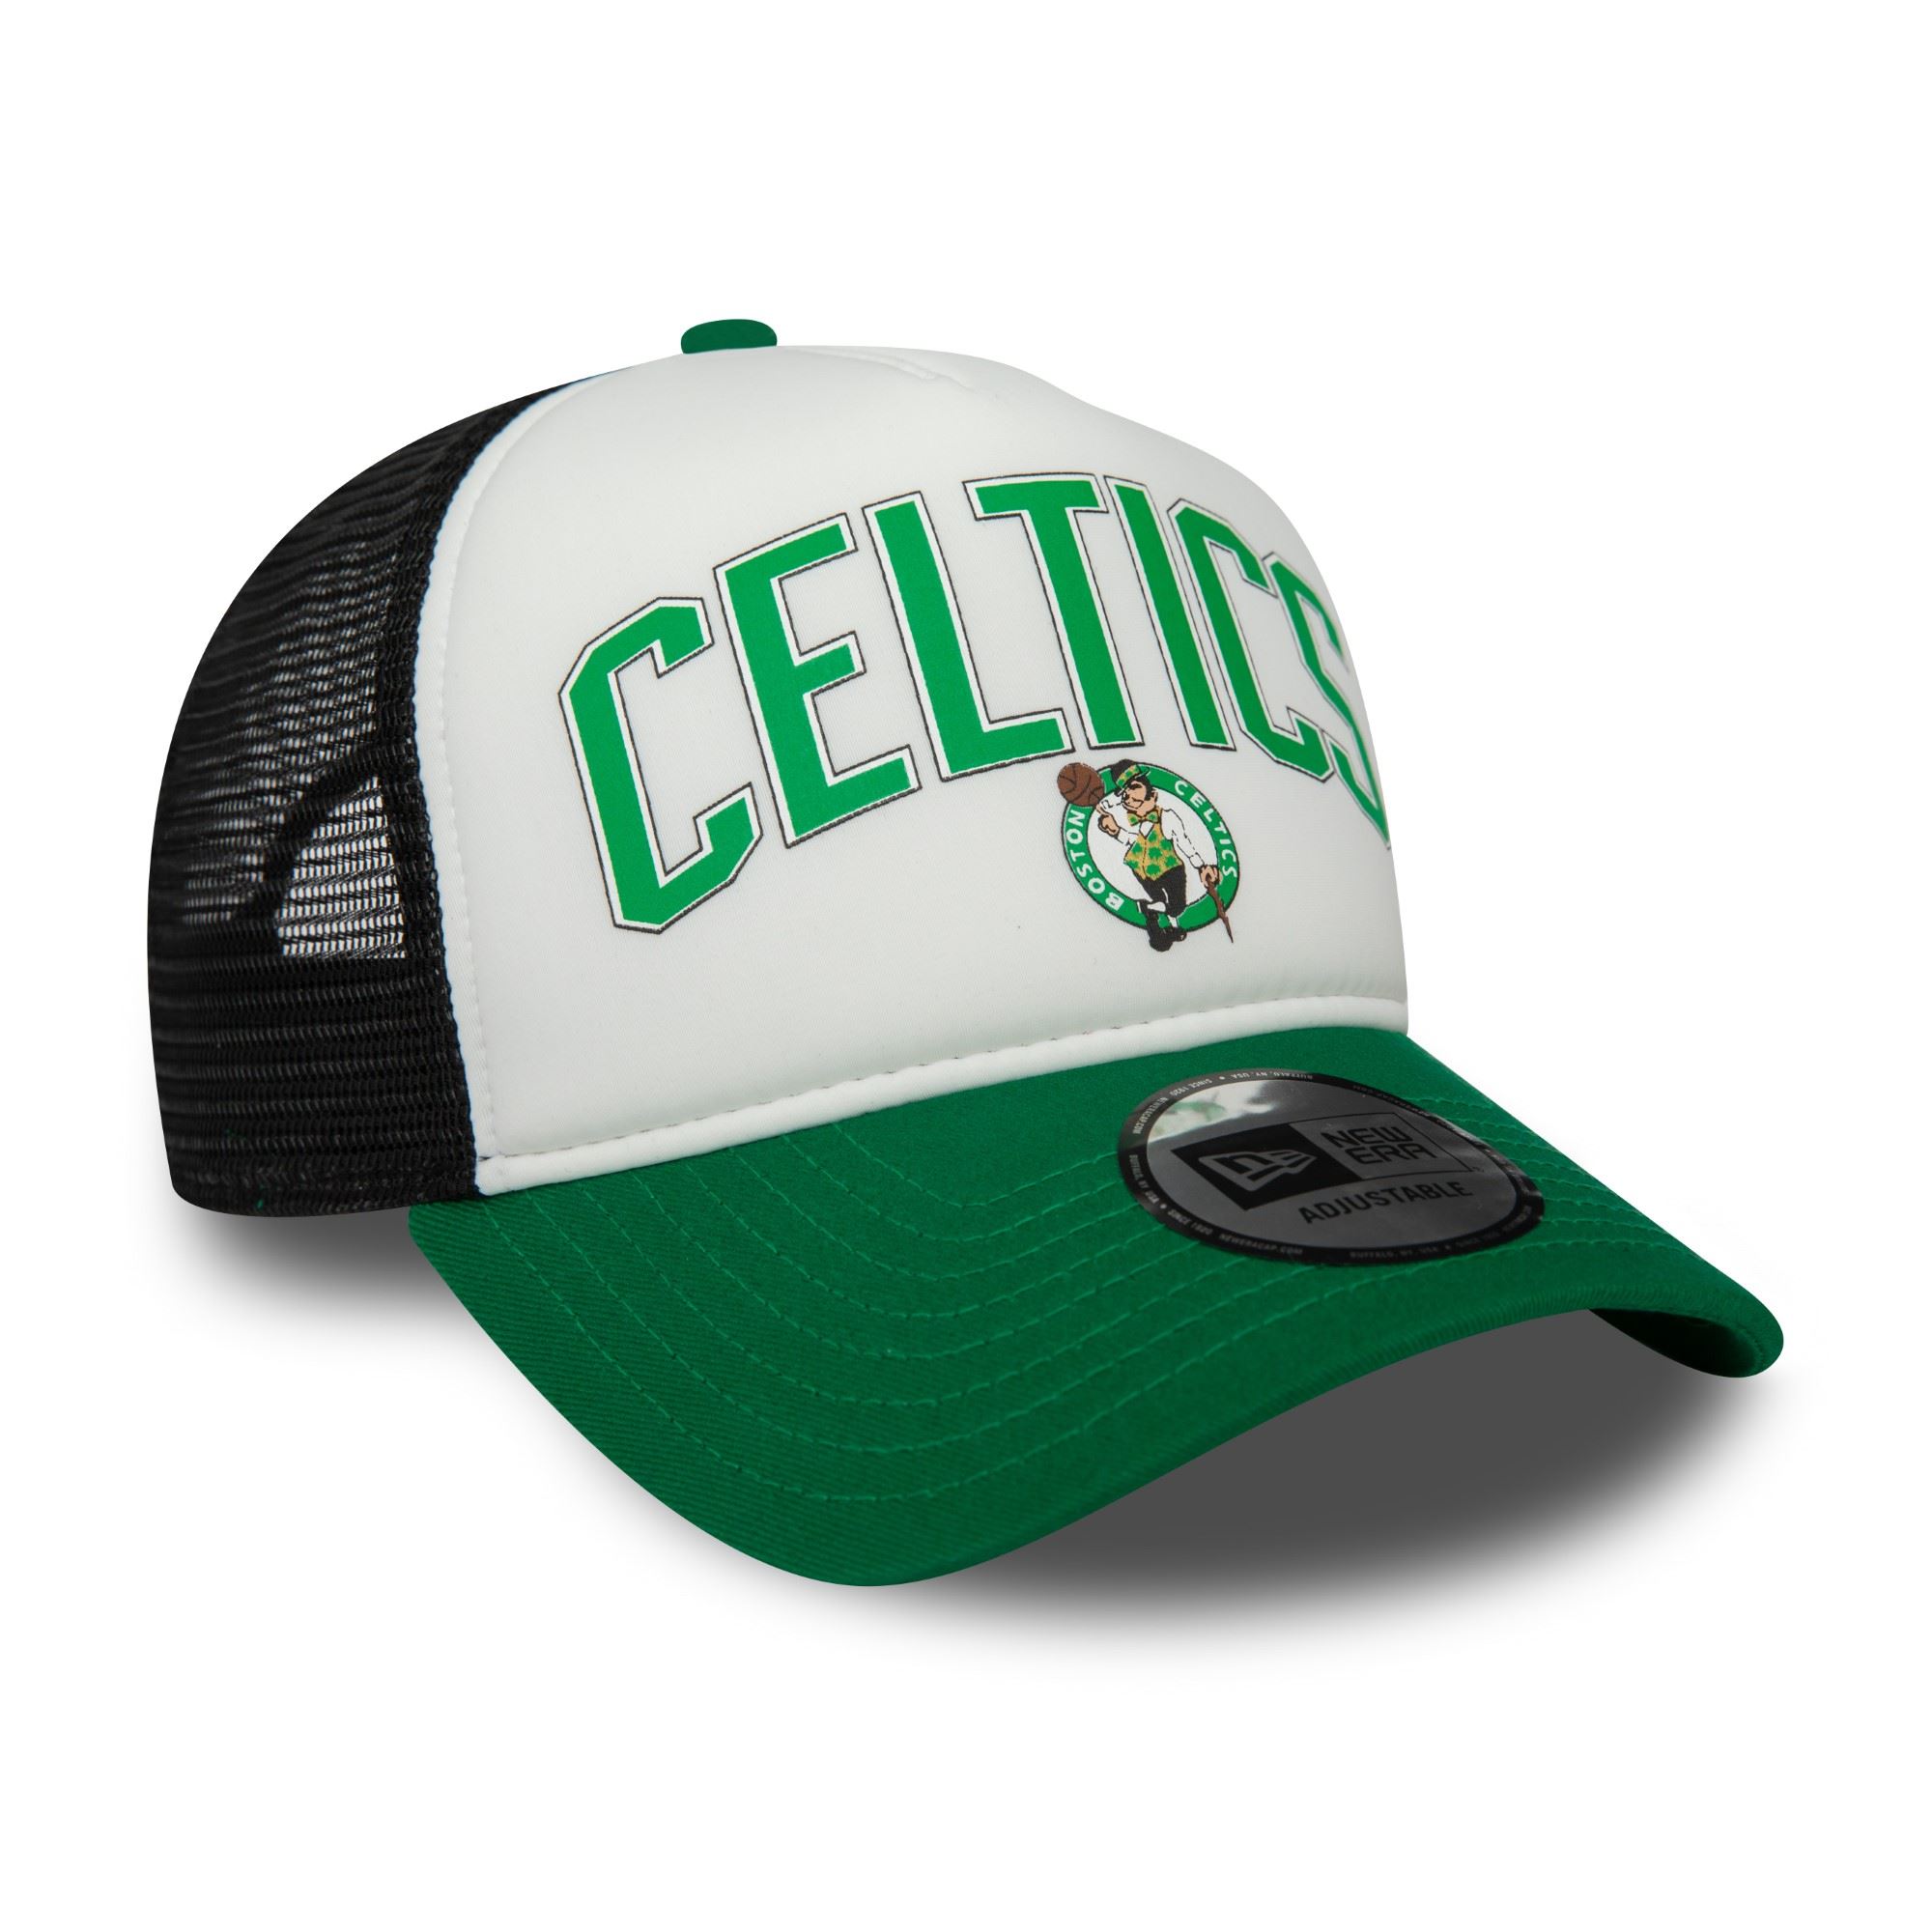 Boston Celtics NBA Retro Weiß Schwarz Grün Verstellbare A-Frame Trucker Cap New Era